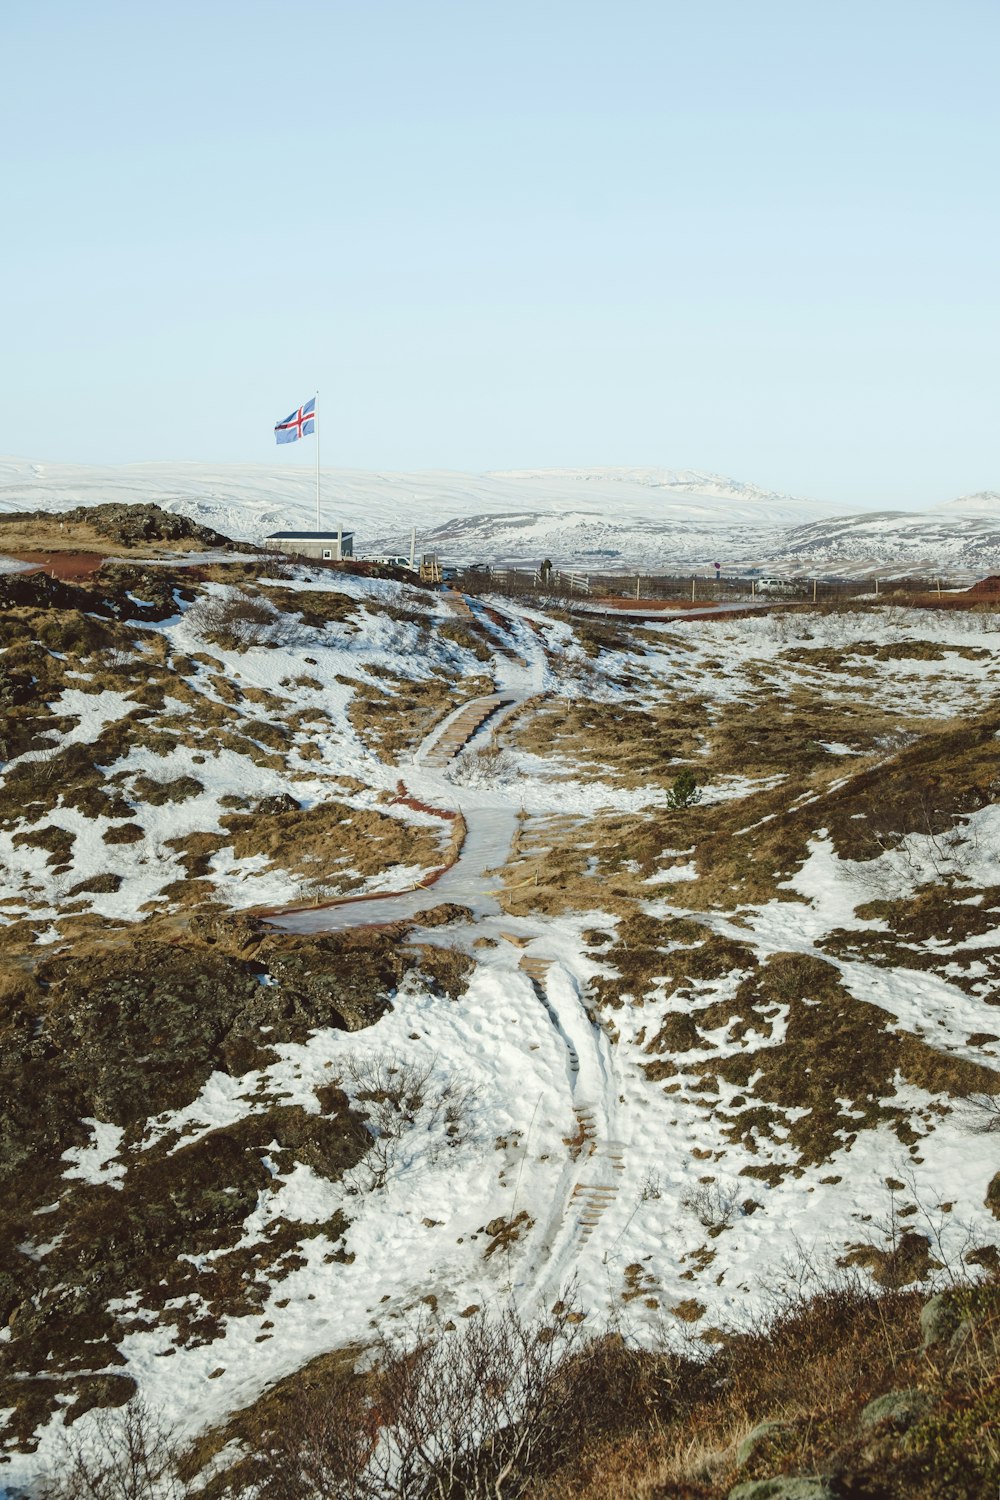 雪に覆われた丘の上に旗が乗っている